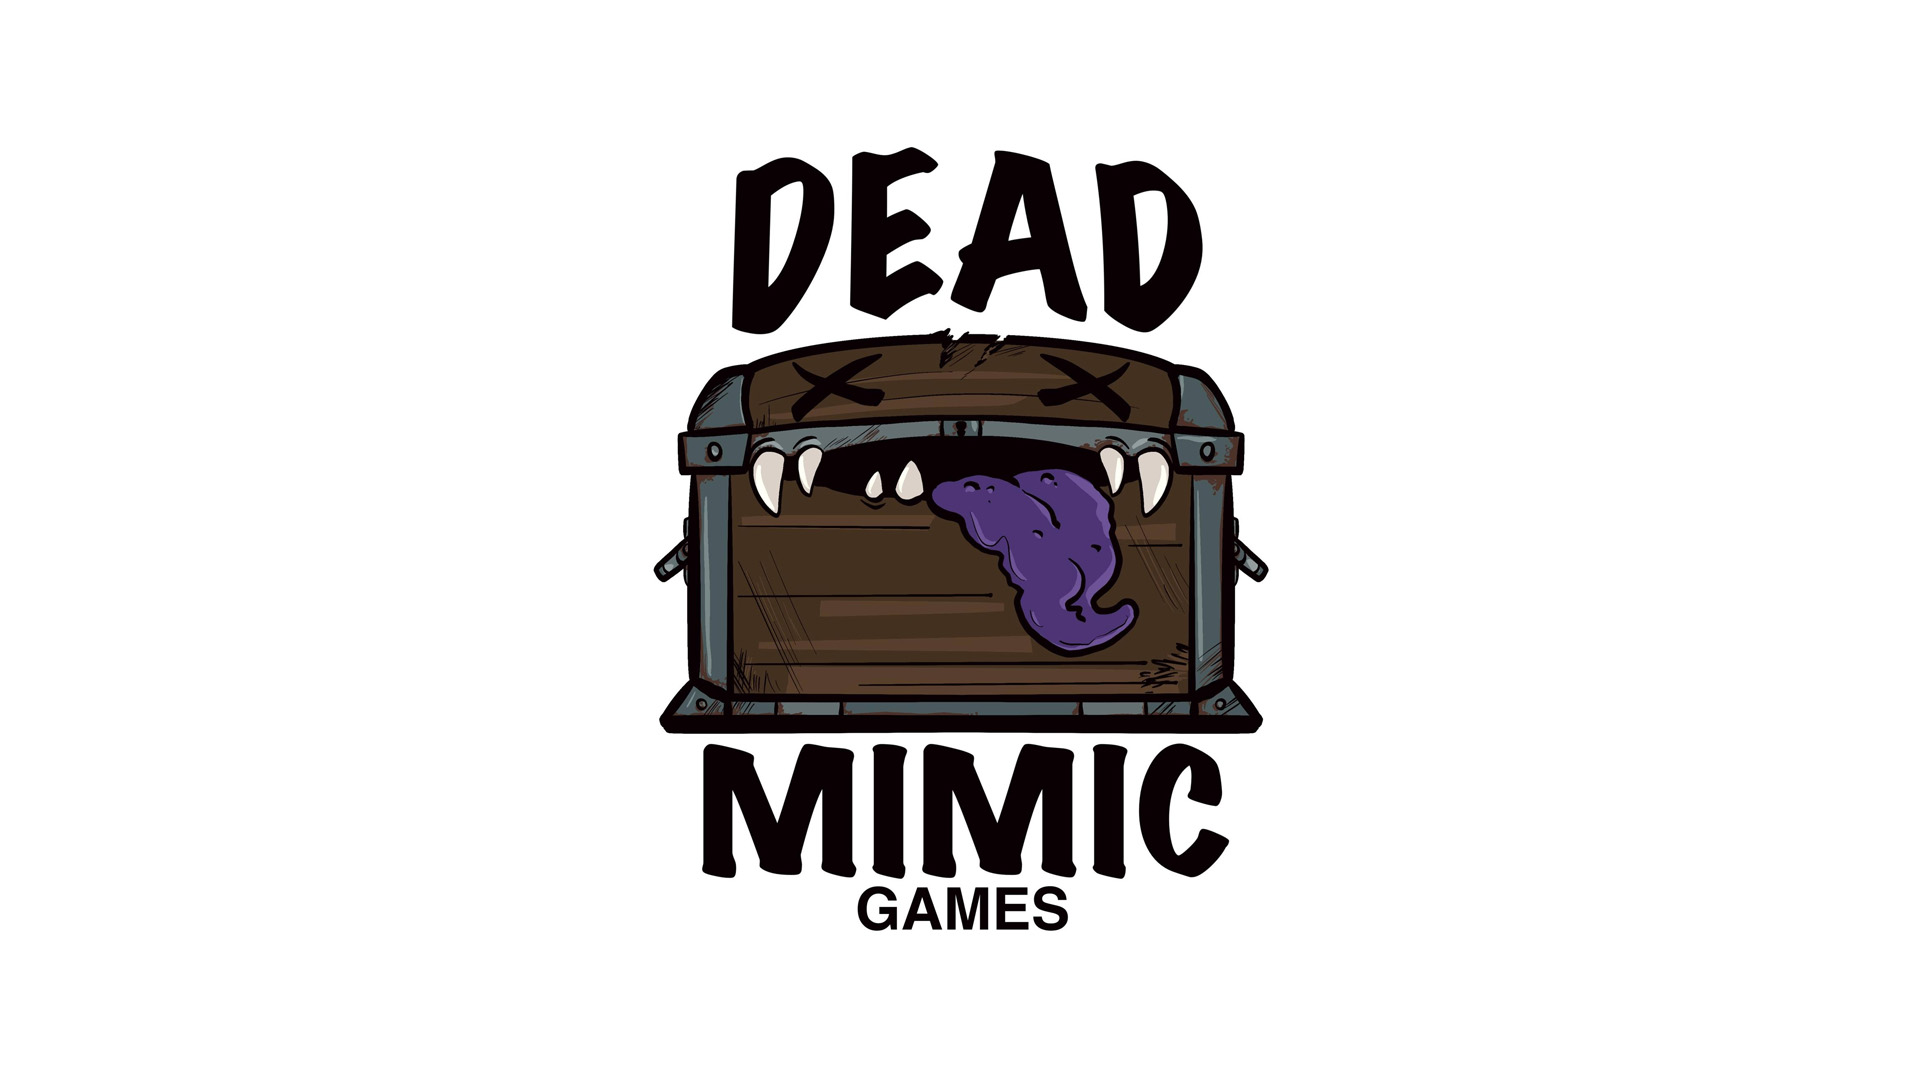 Dead Mimic Games